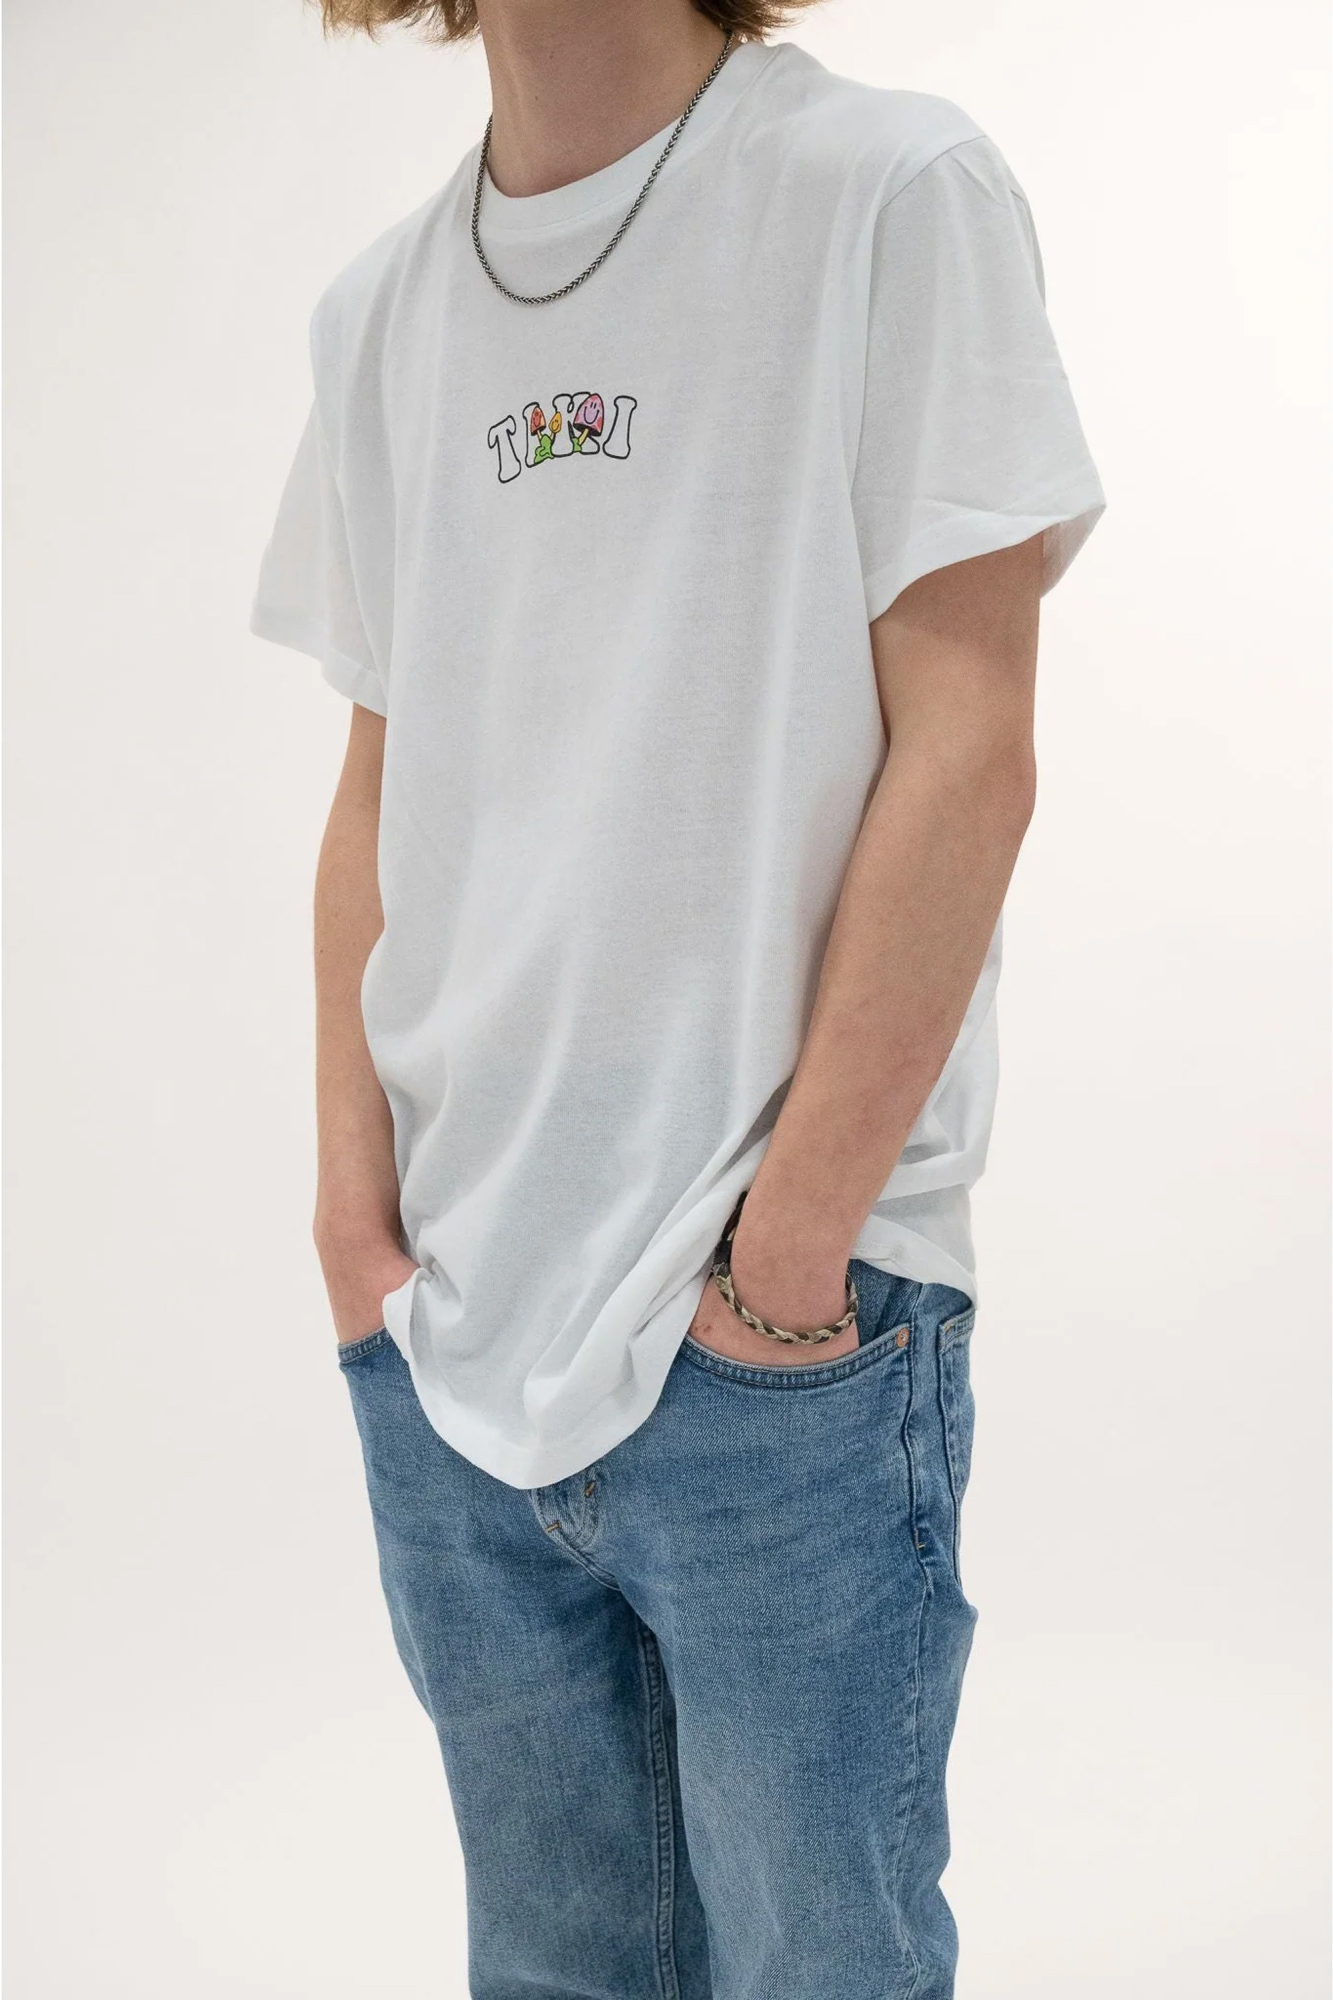 Tiki Unisex Party Wave Short Sleeve T-shirt White - Size: Medium